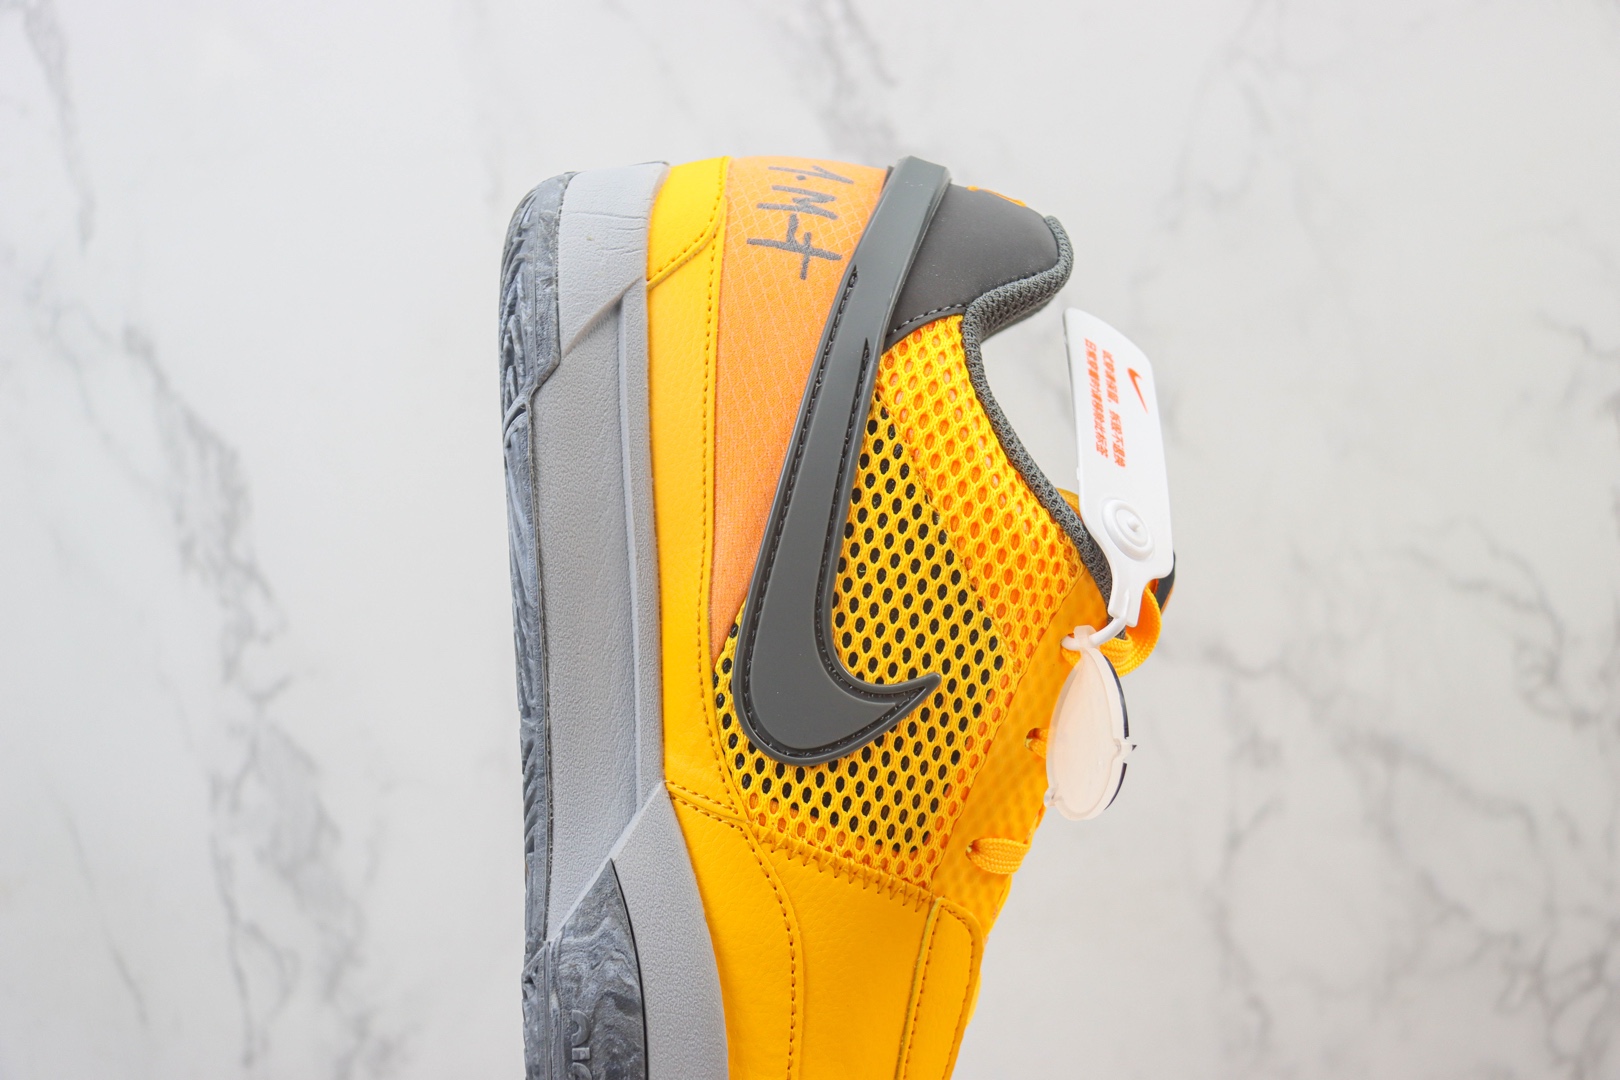 耐克Nike JA1 “Phantom”纯原版本莫兰特1代黄灰色篮球鞋 莆田耐克货源 货号：FV1282-800